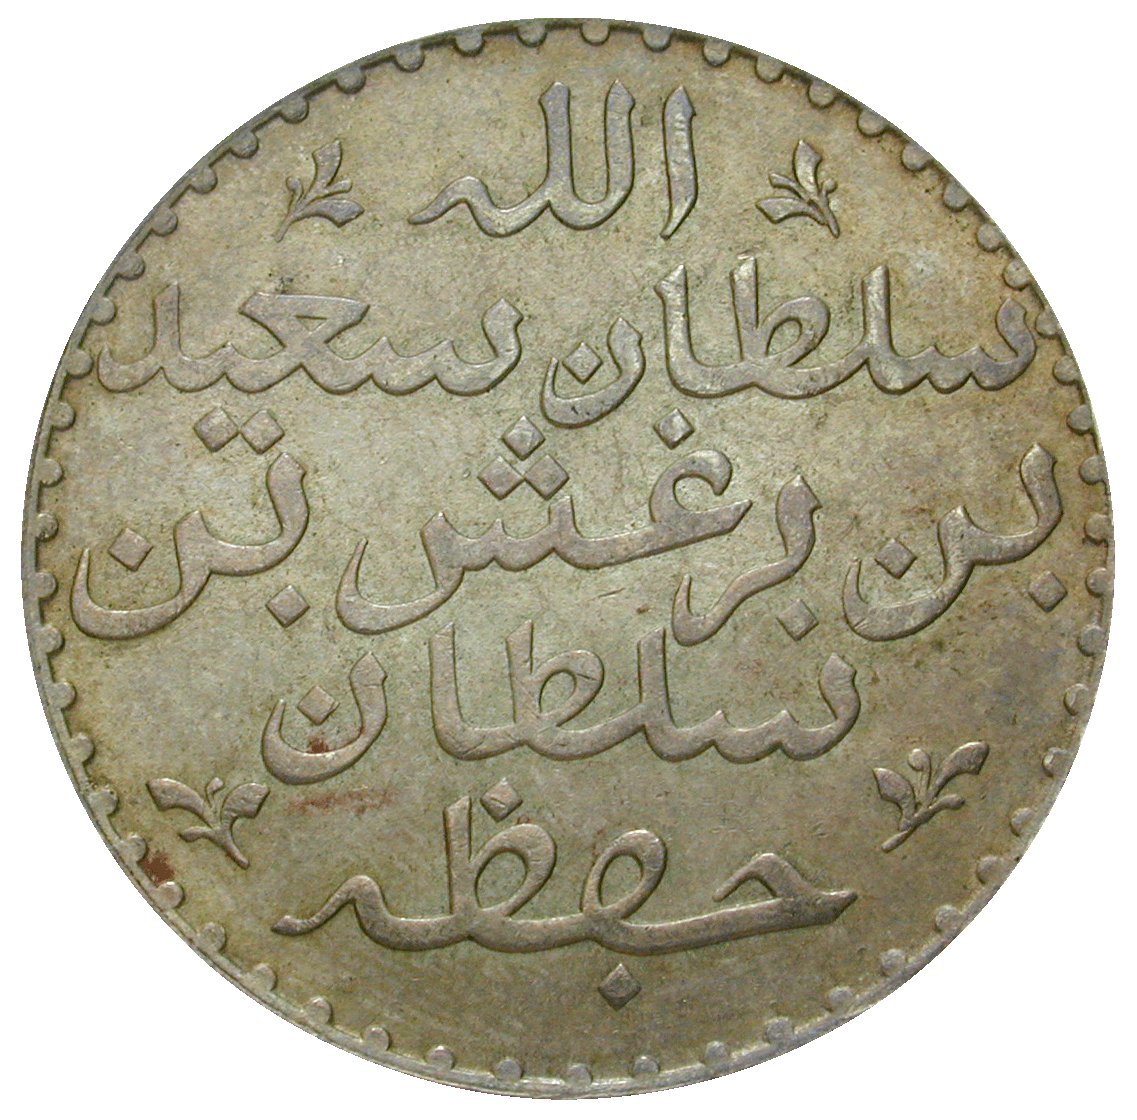 Sultanate of Zanzibar, Barghash bin Said, Riyal 1299 AH (obverse)